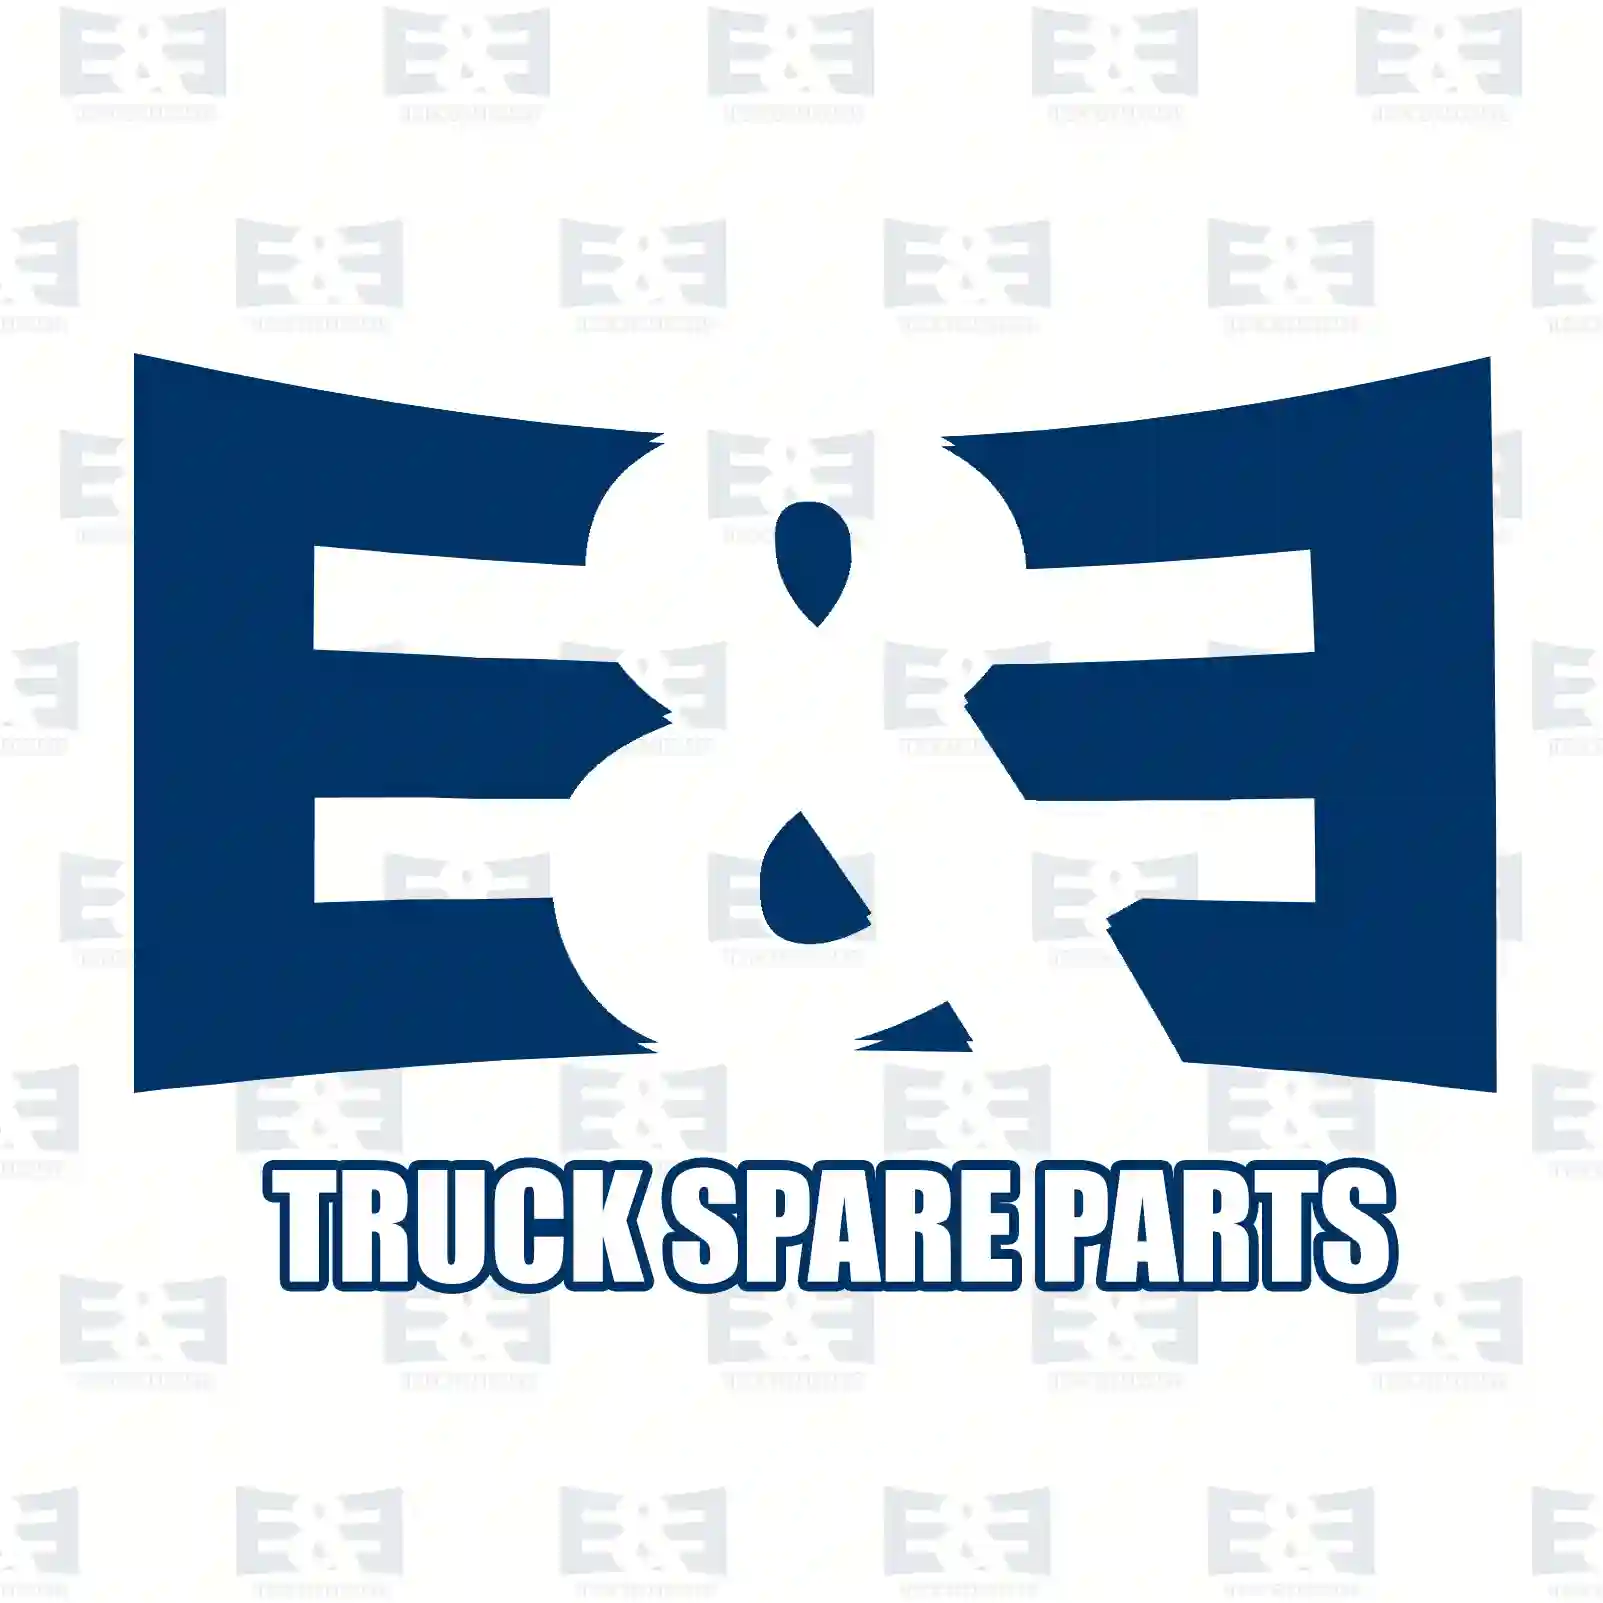 Relay, 2E2299301, 4005450605, 1523981, 1527015, 867514, 02991712, 2991712, 505817036, 58170360, 11181810, 630105108, 6301423, 630142314, 0045450605, 1863700015, ZG20793-0008 ||  2E2299301 E&E Truck Spare Parts | Truck Spare Parts, Auotomotive Spare Parts Relay, 2E2299301, 4005450605, 1523981, 1527015, 867514, 02991712, 2991712, 505817036, 58170360, 11181810, 630105108, 6301423, 630142314, 0045450605, 1863700015, ZG20793-0008 ||  2E2299301 E&E Truck Spare Parts | Truck Spare Parts, Auotomotive Spare Parts